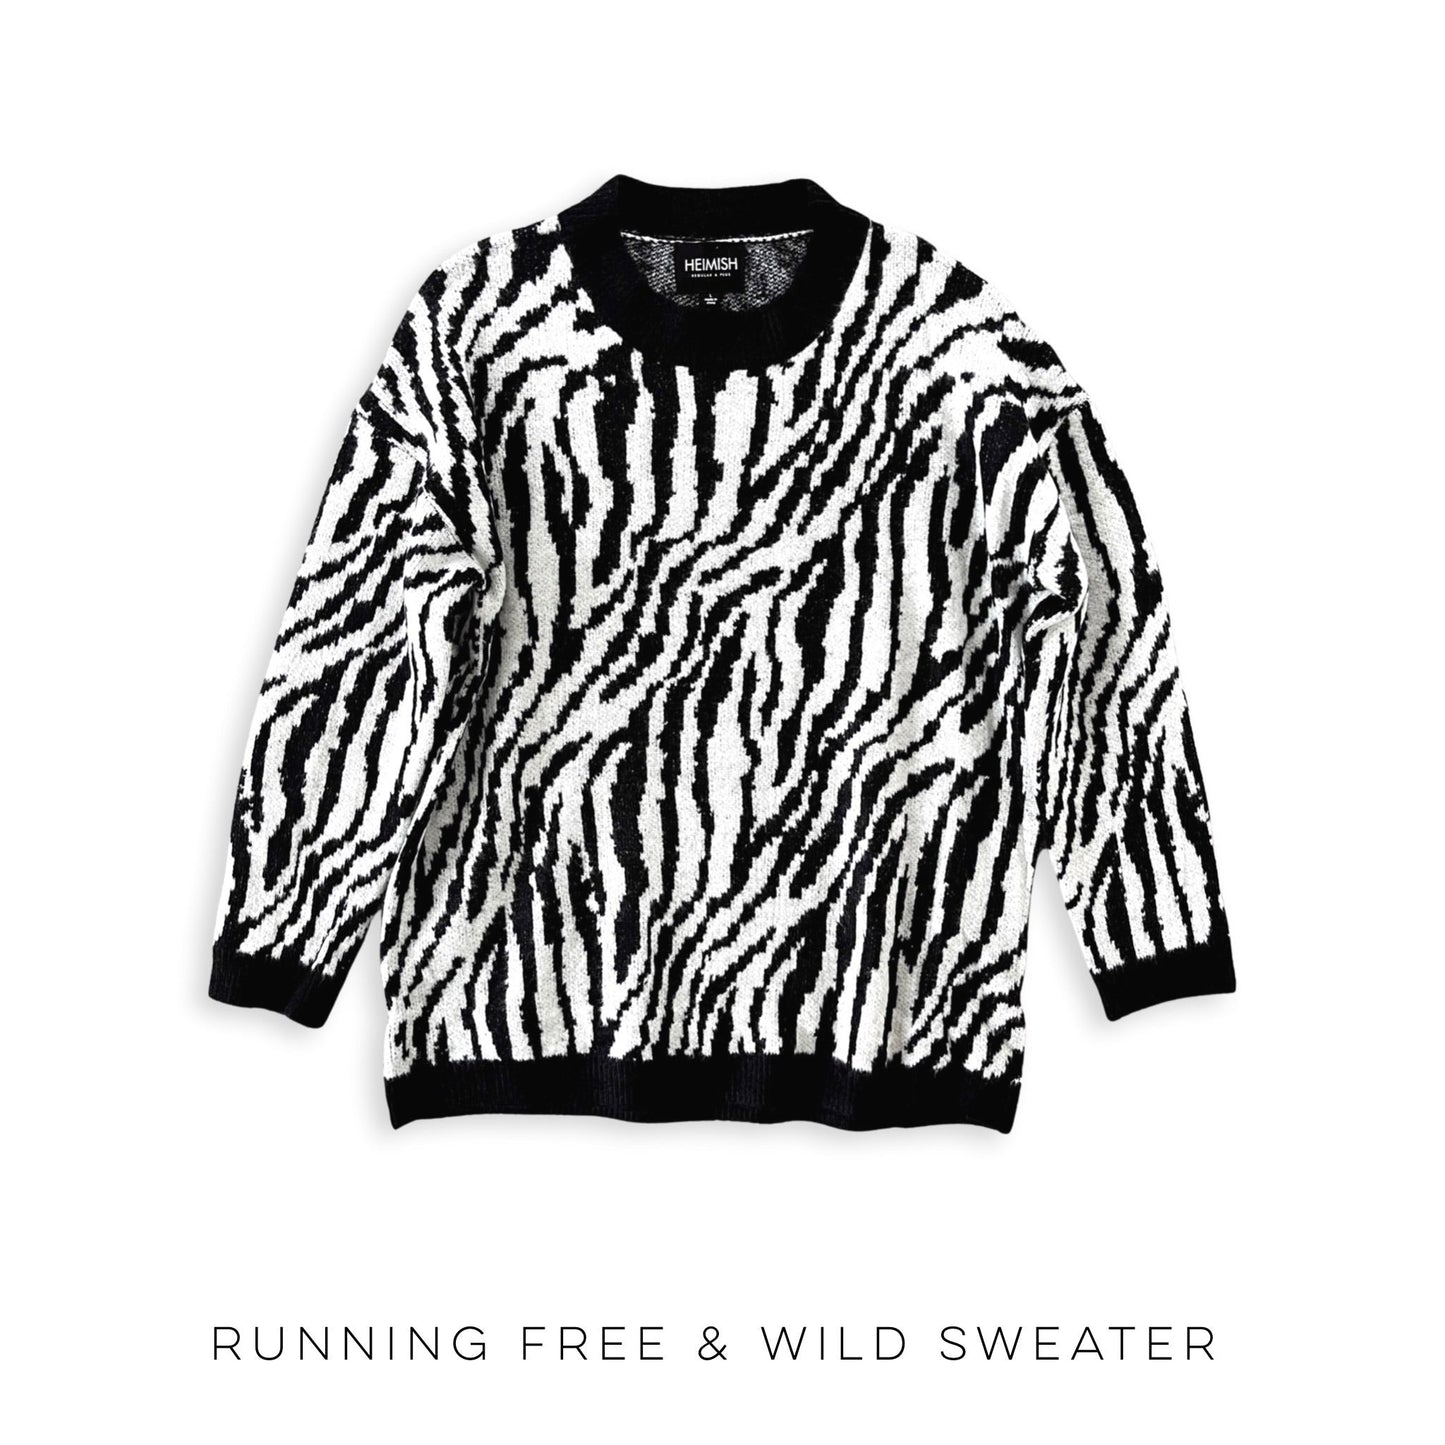 Running Free & Wild Sweater